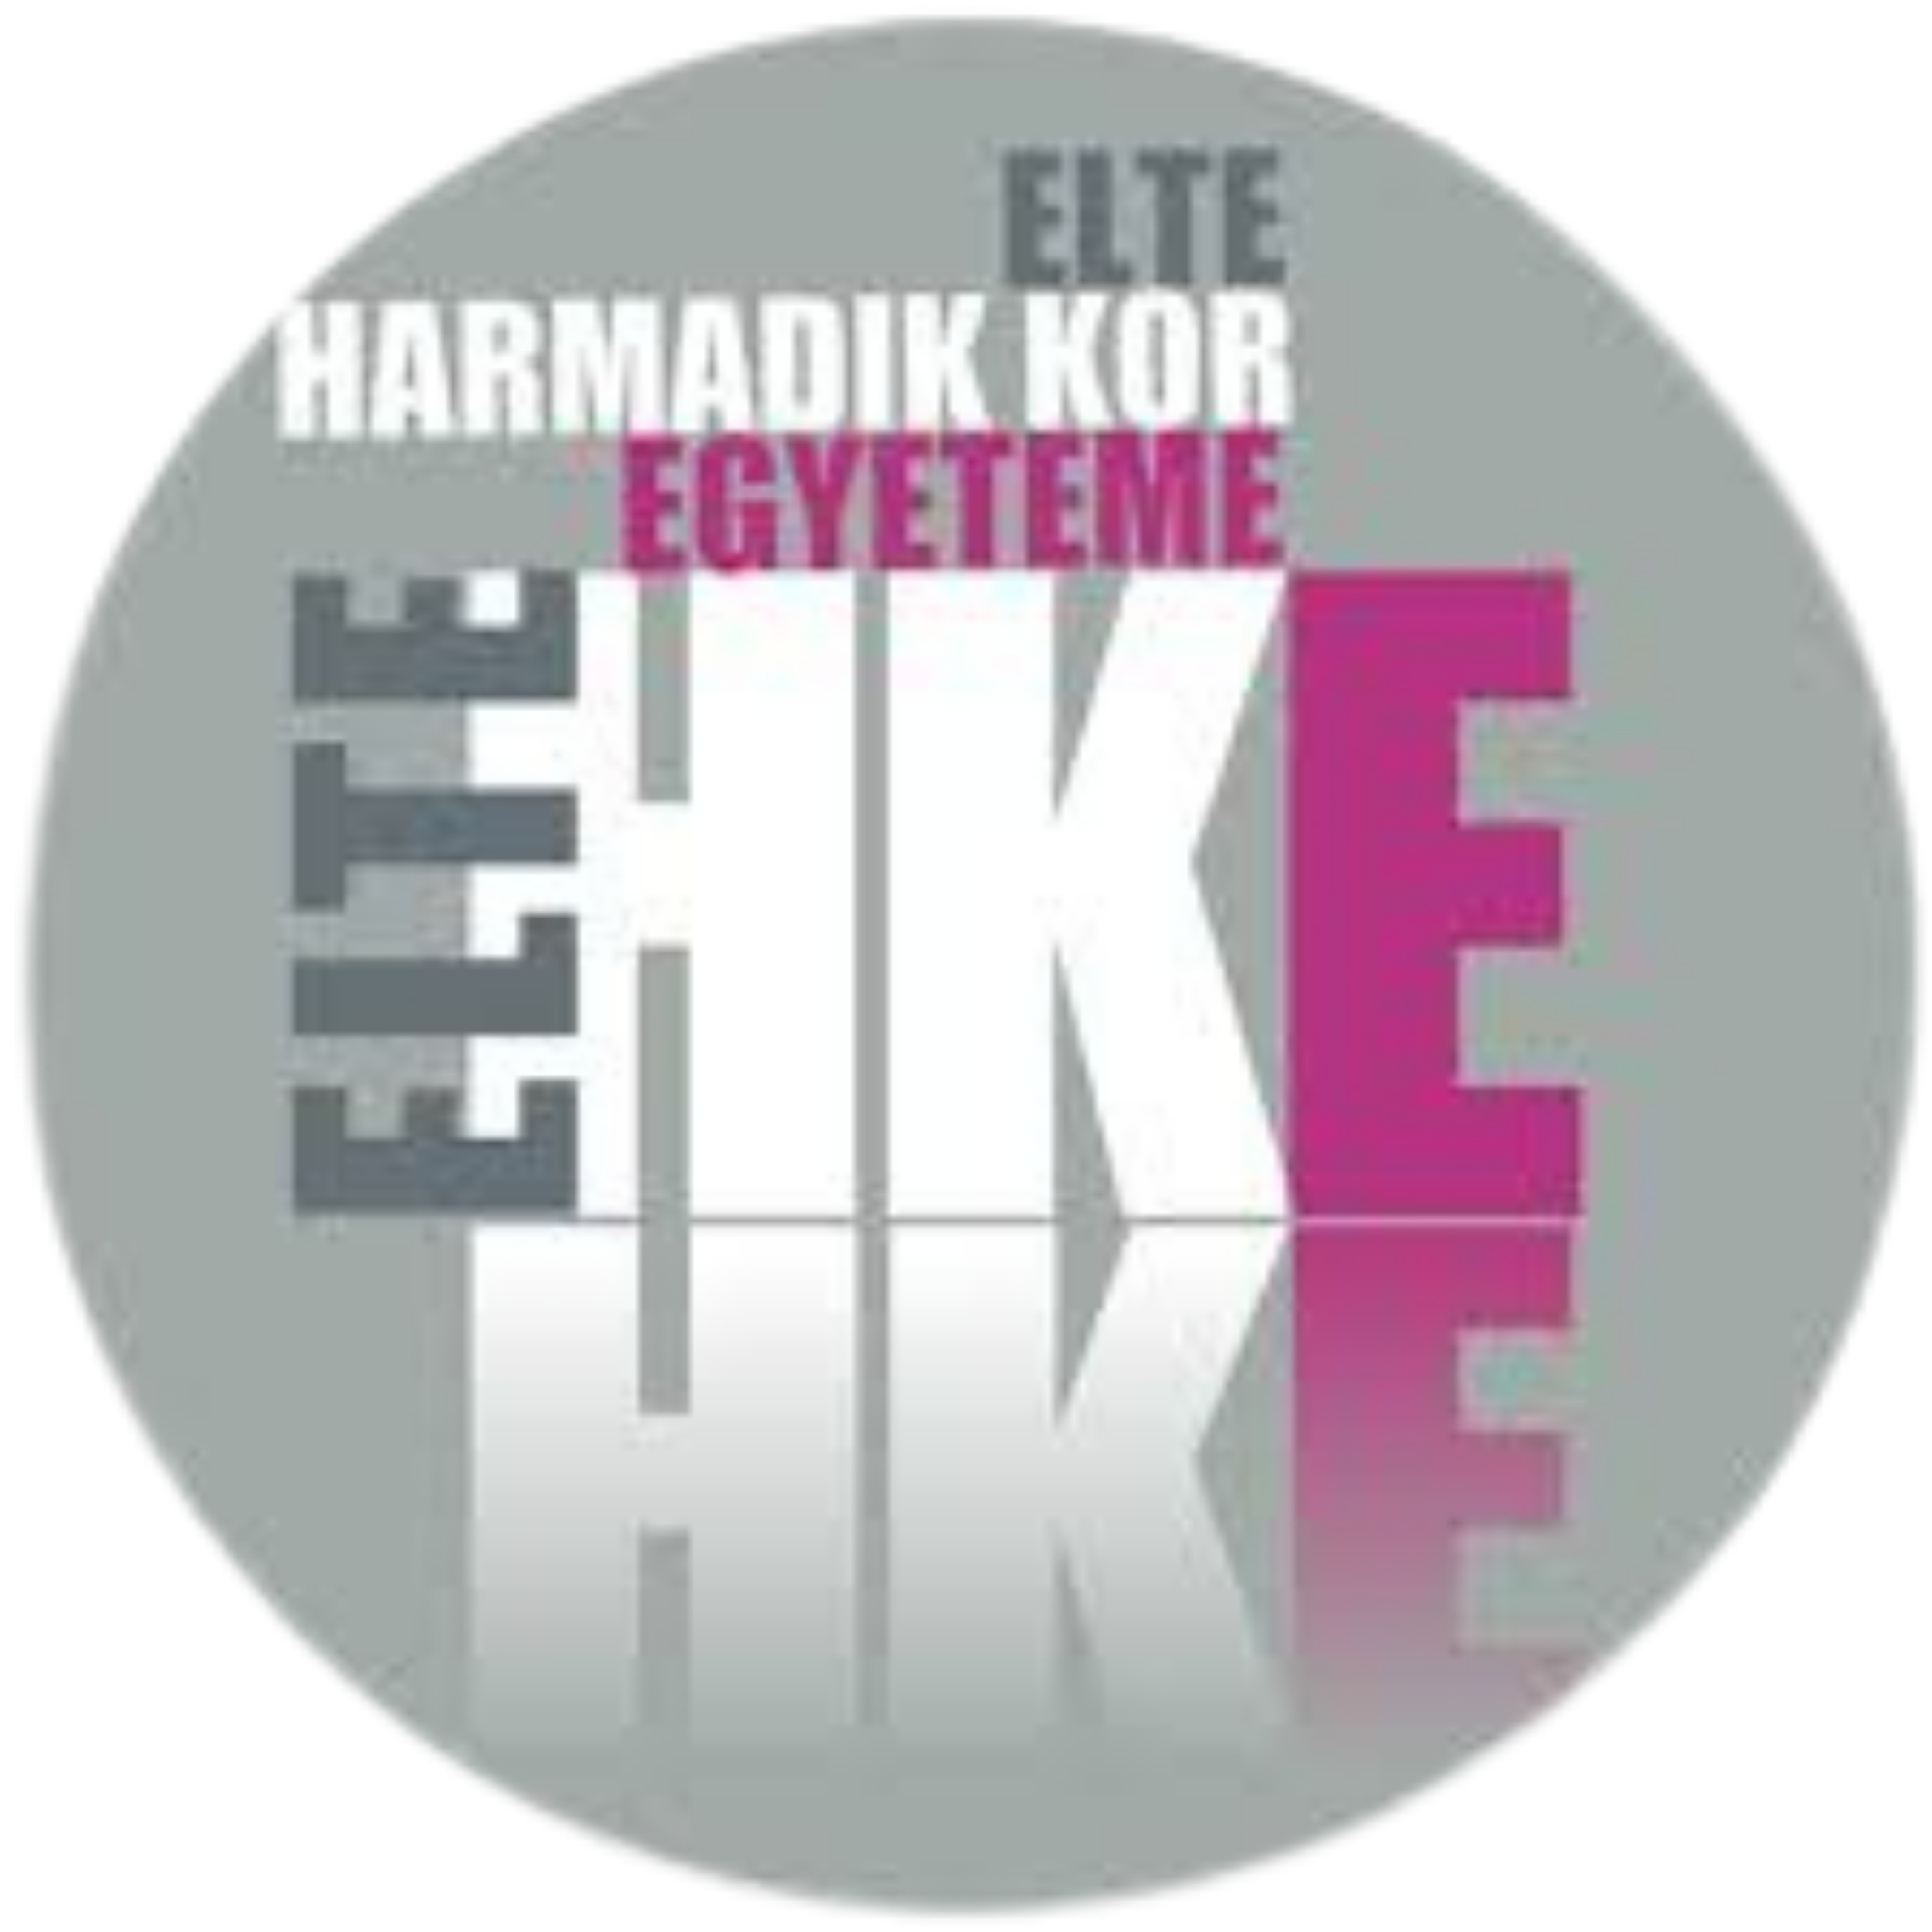 ELTE Harmadik Kor Egyeteme logó